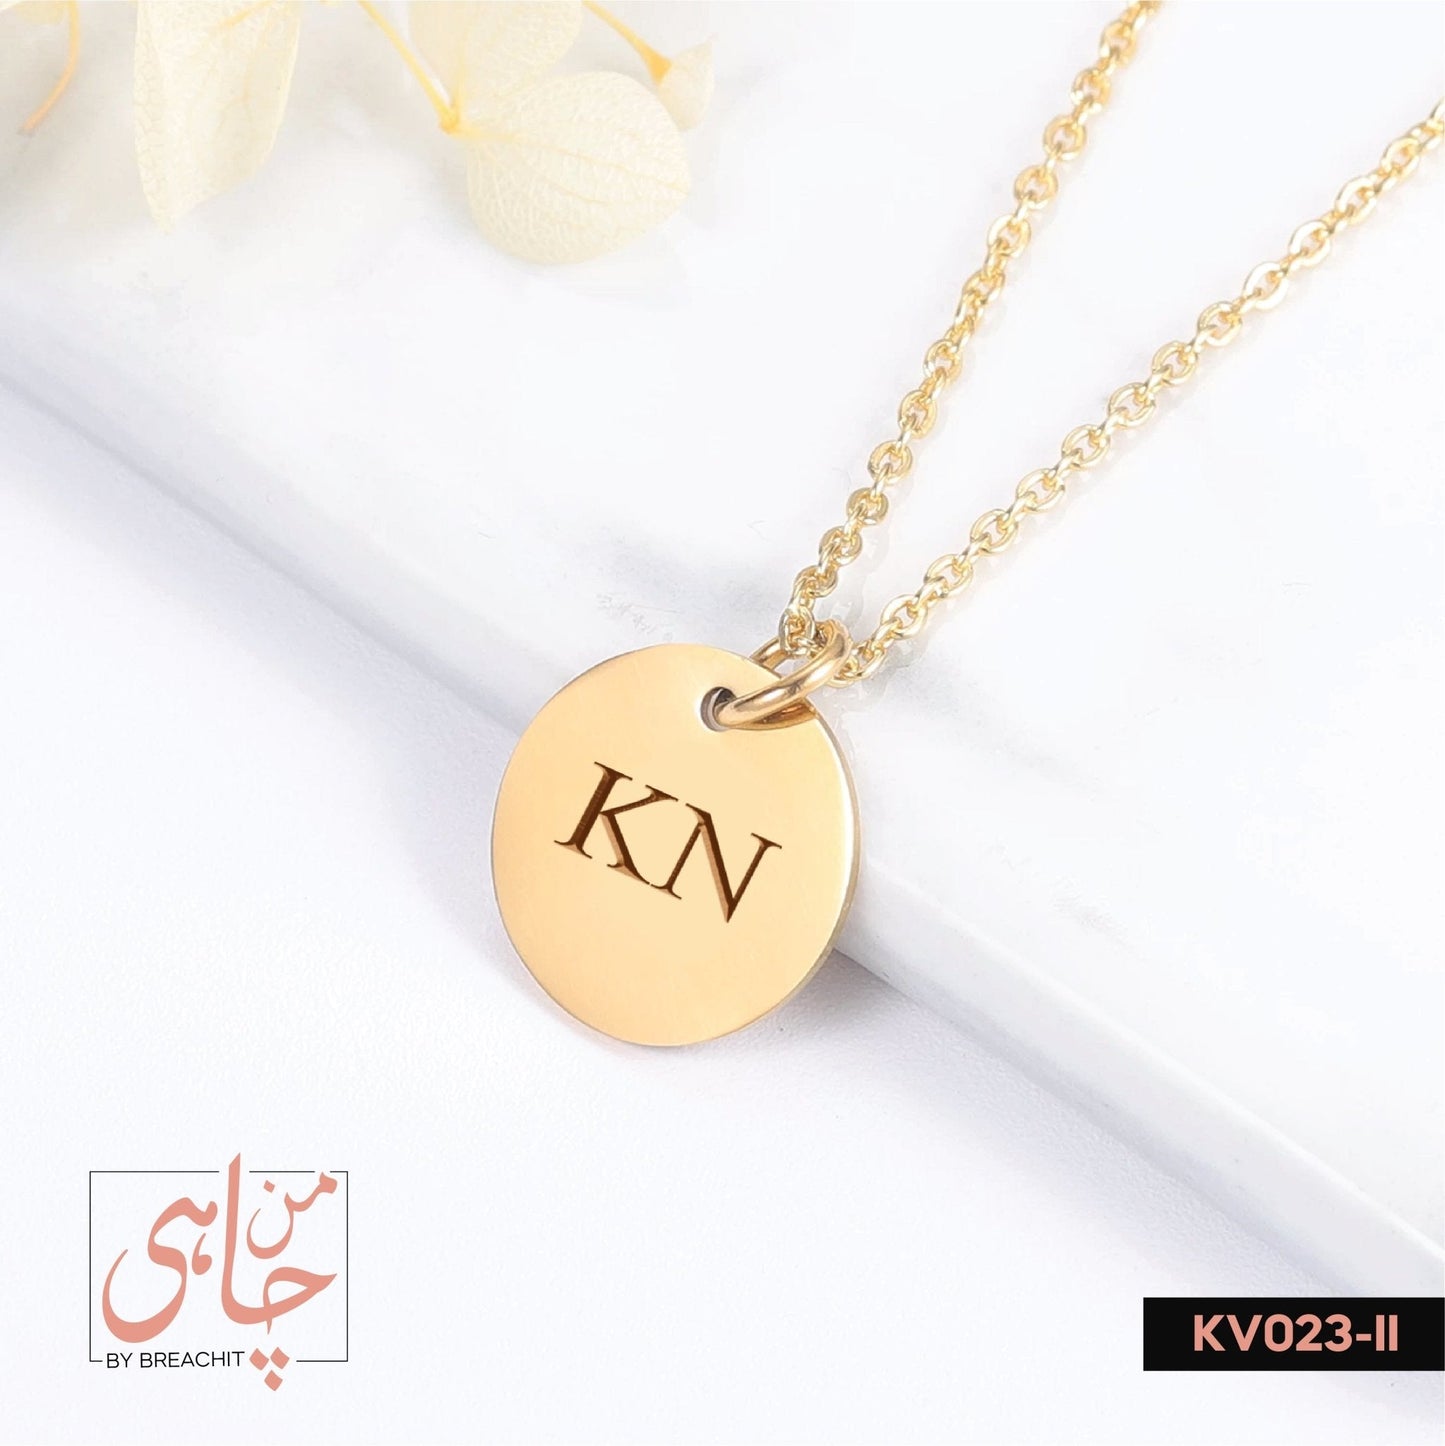 KV023 Double Letters Necklace - BREACHIT